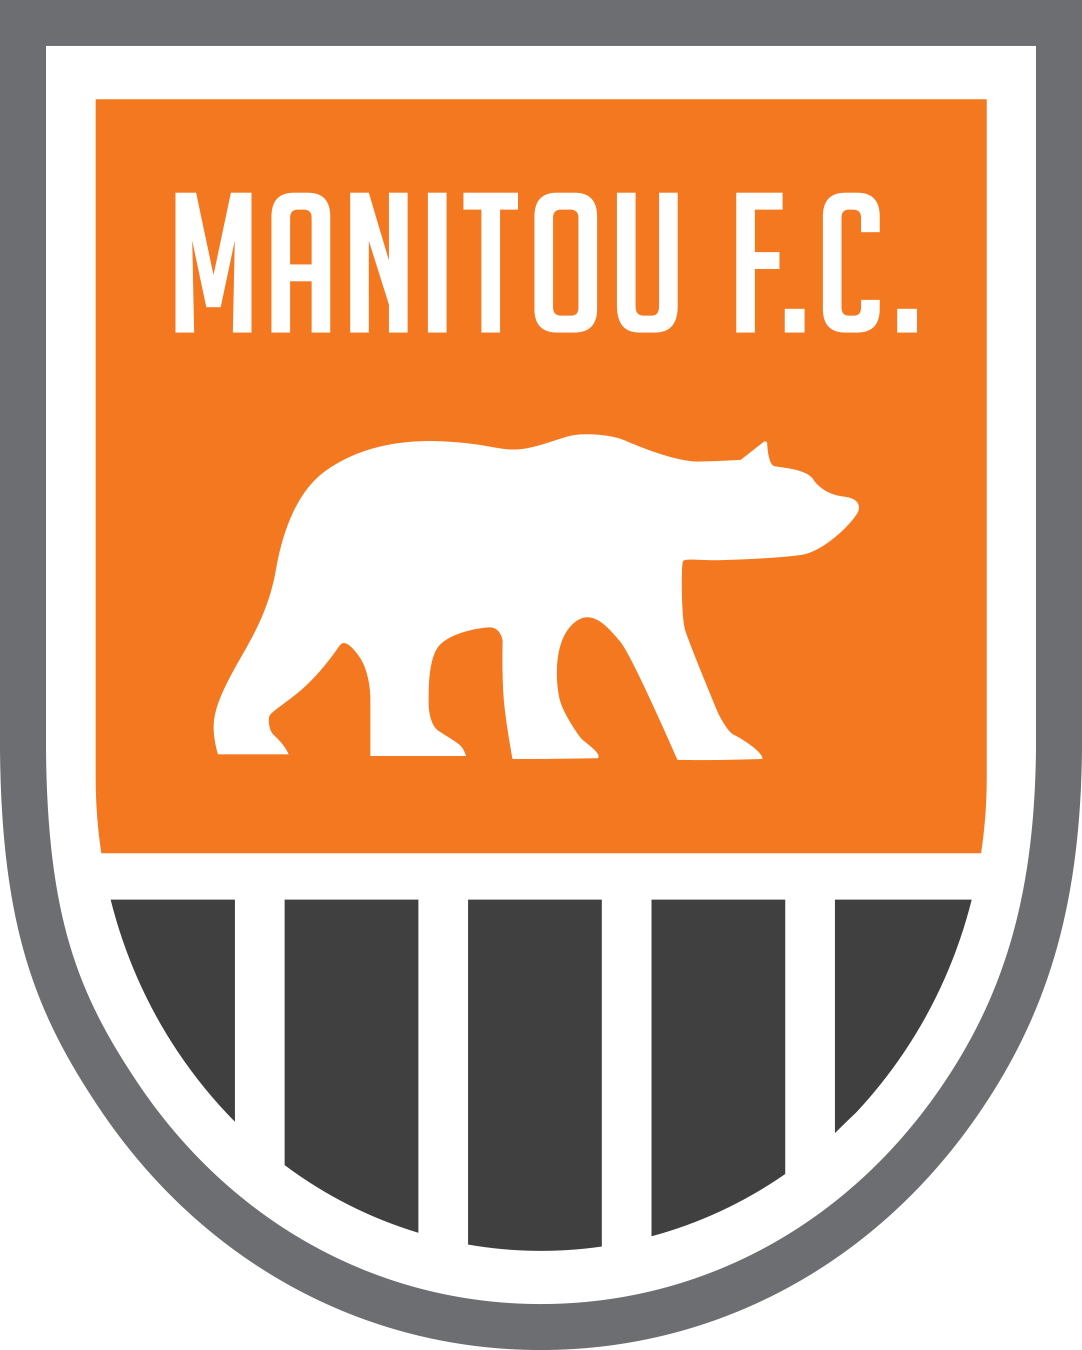 Manitou F.C. team badge